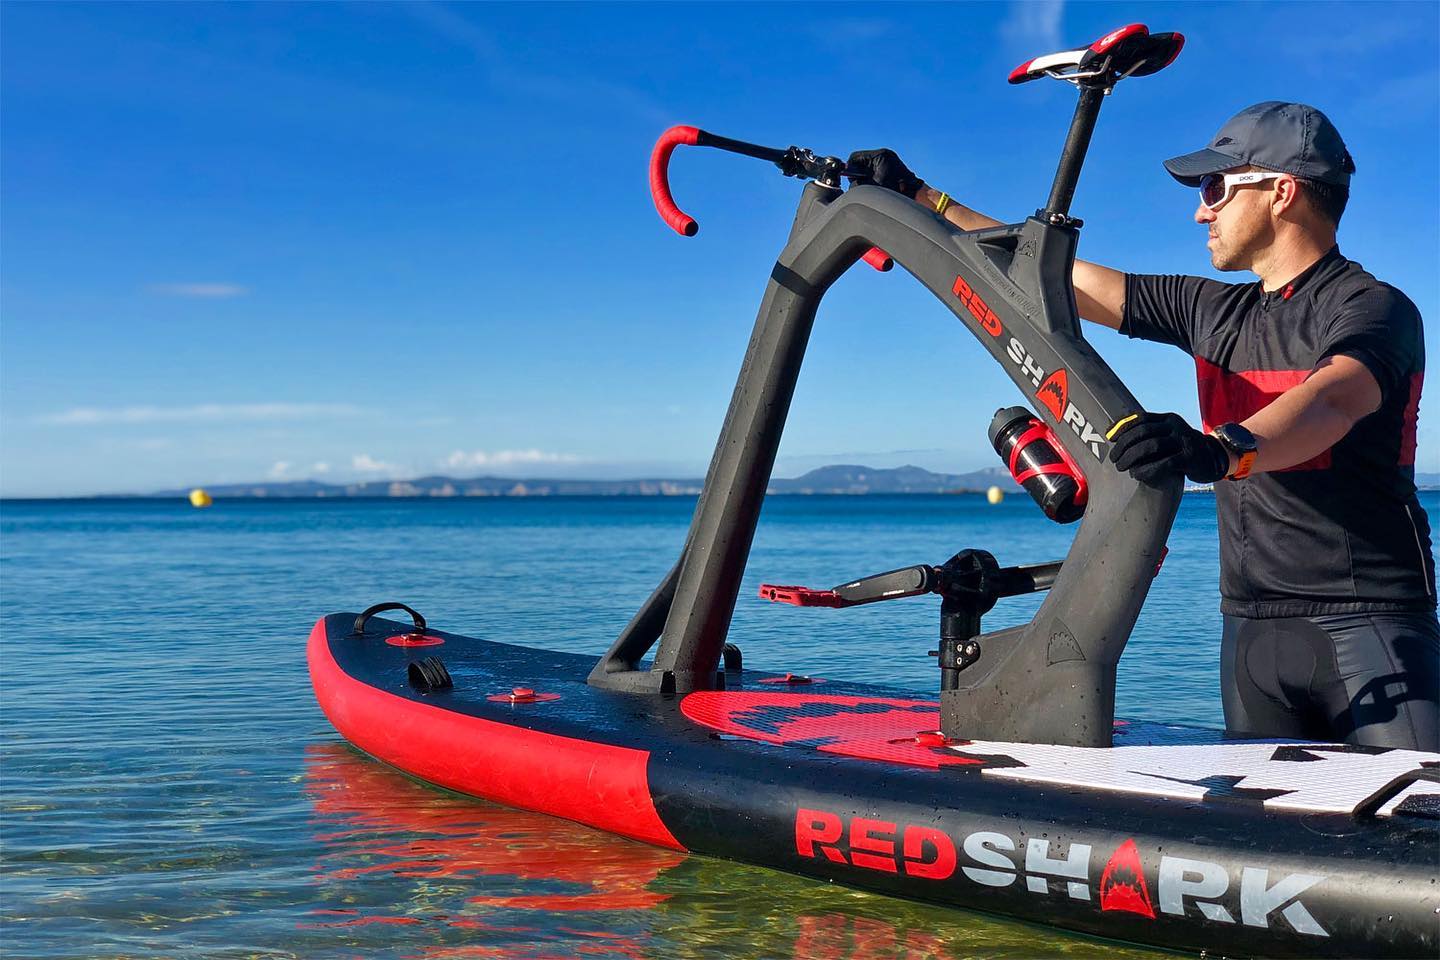 Red Shark Bike Croatia Boat Show 2022